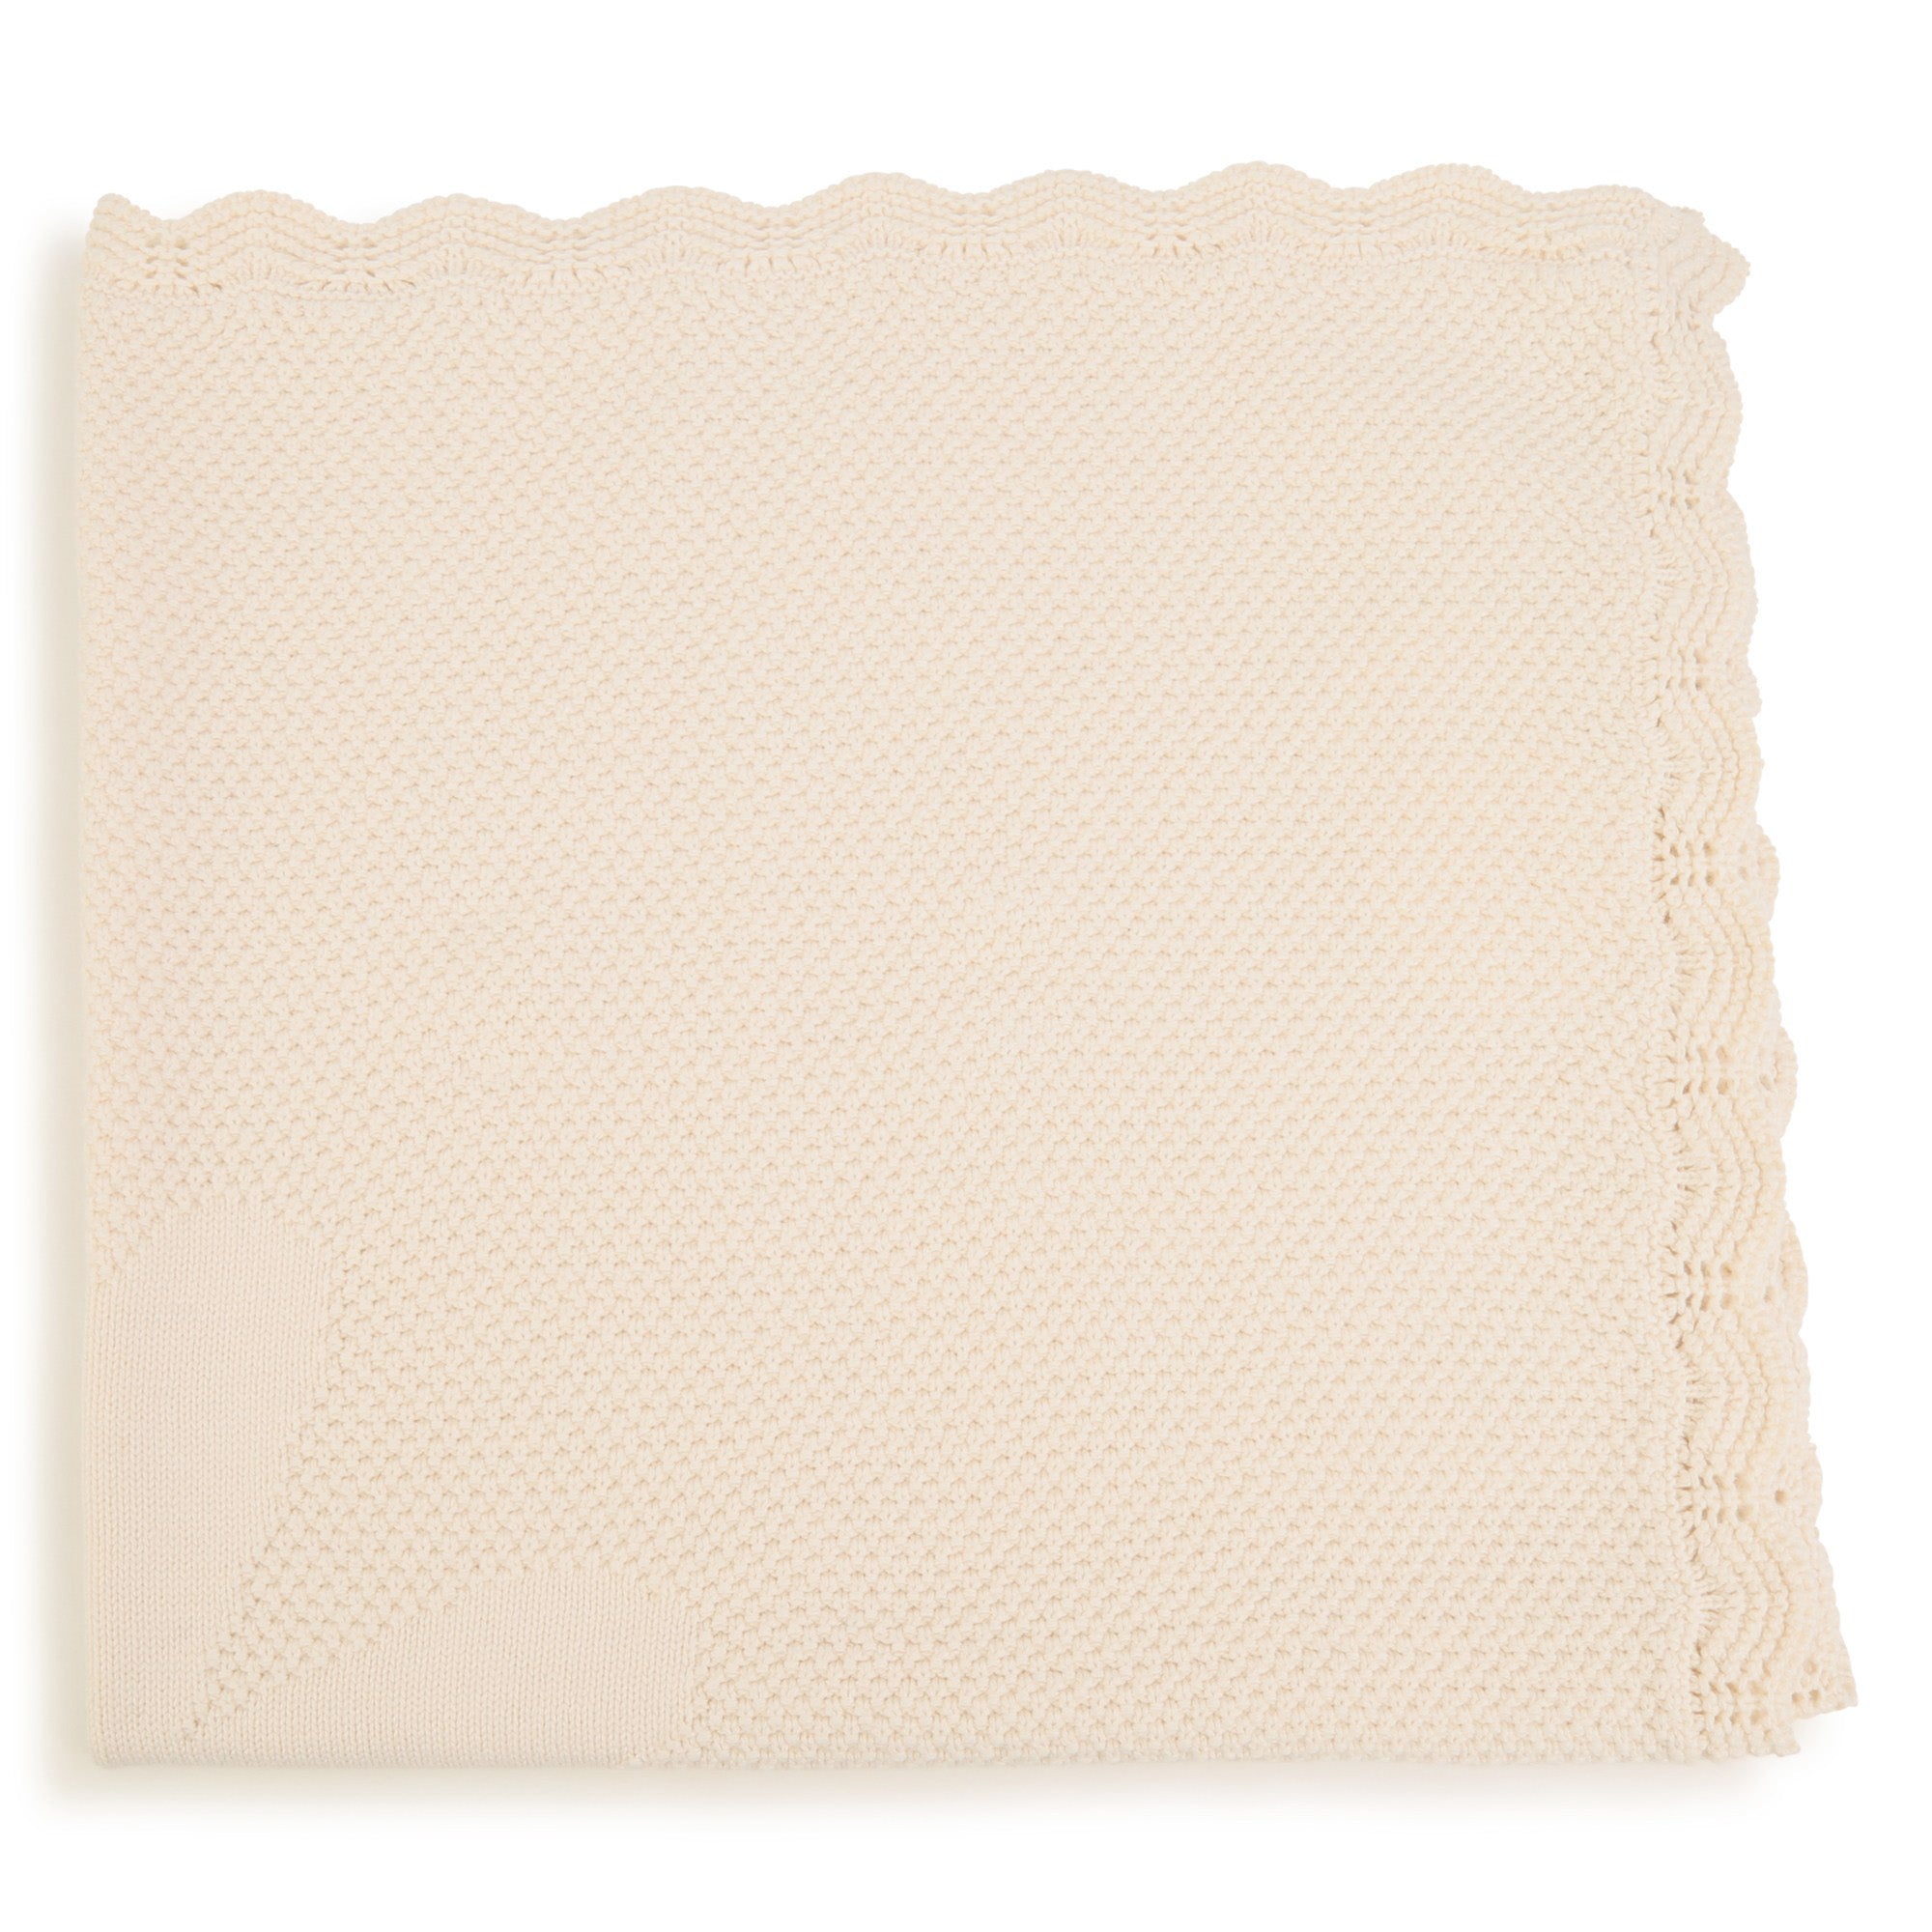 Pueri. Textile UNQ Ivory 90% Cotton, 10% Wool